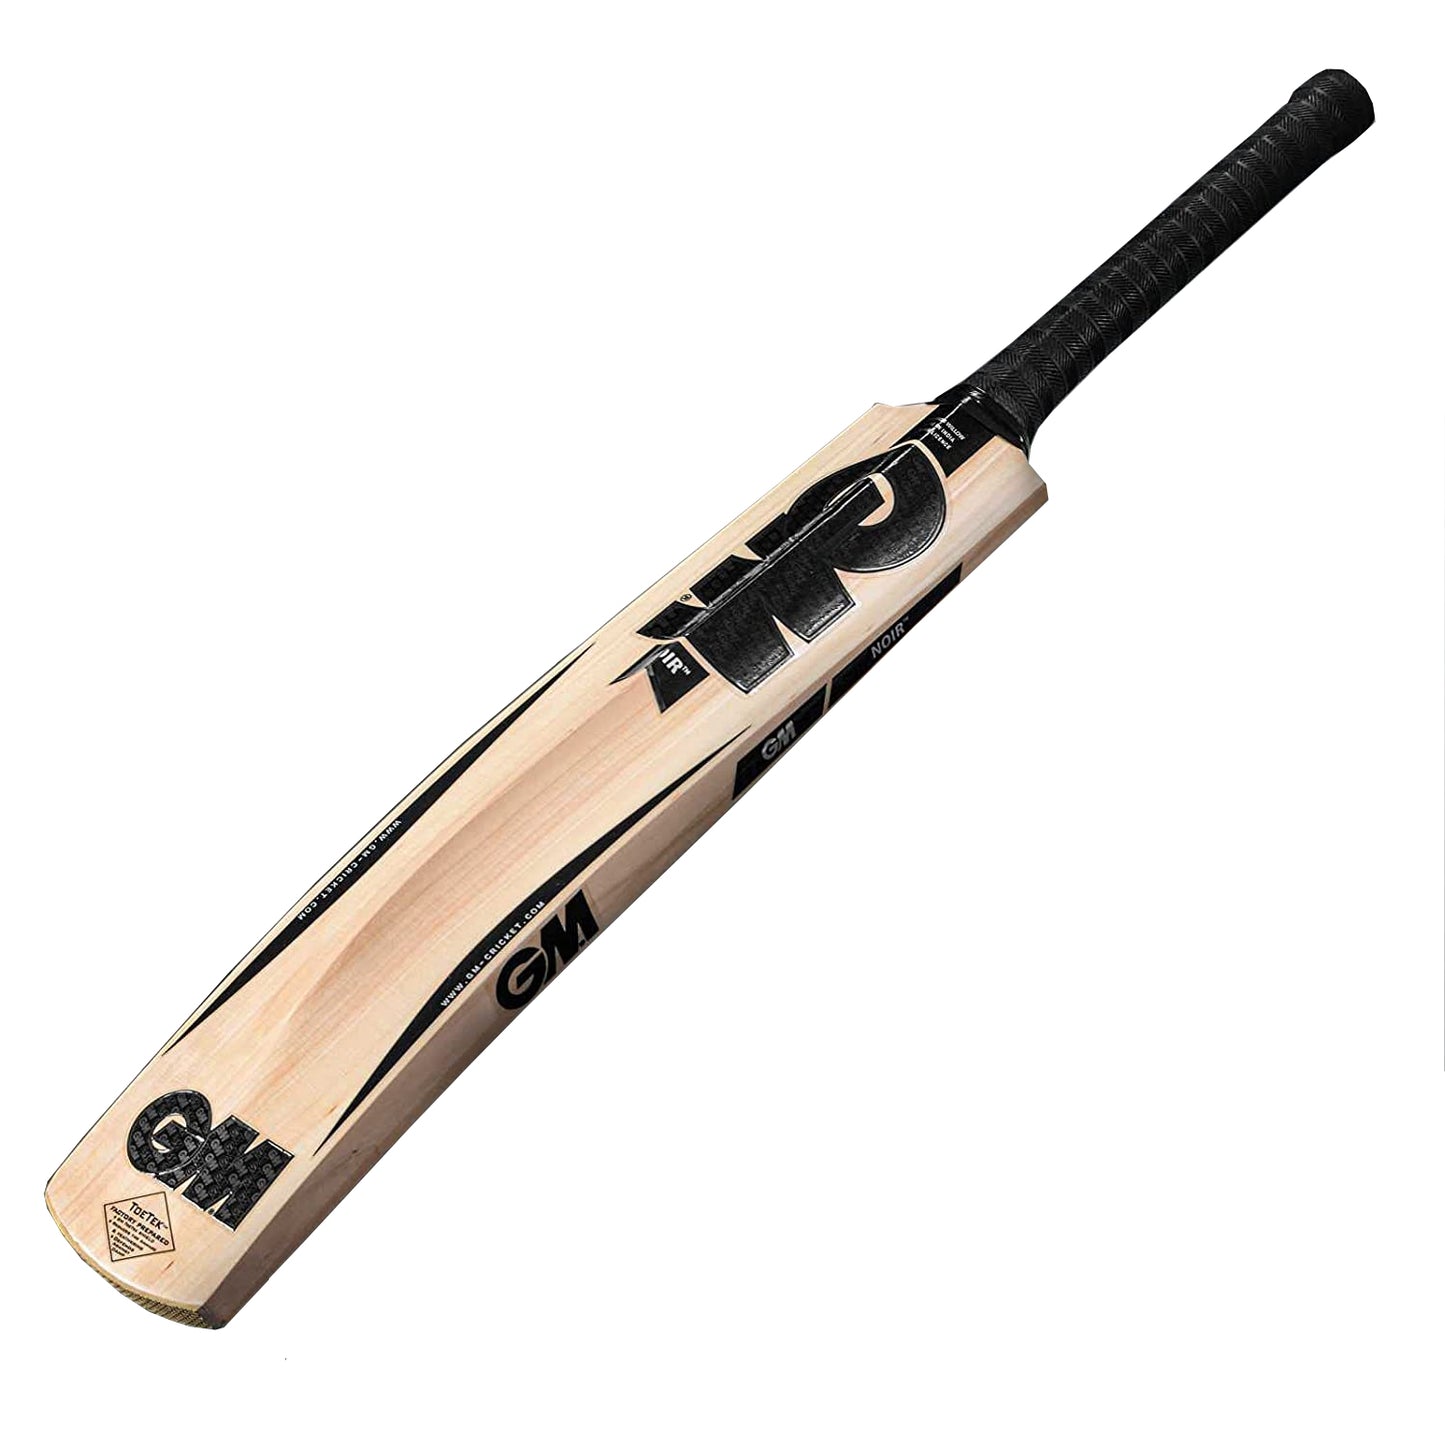 GM Noir Contender Kashmir Willow Cricket Bat - Best Price online Prokicksports.com